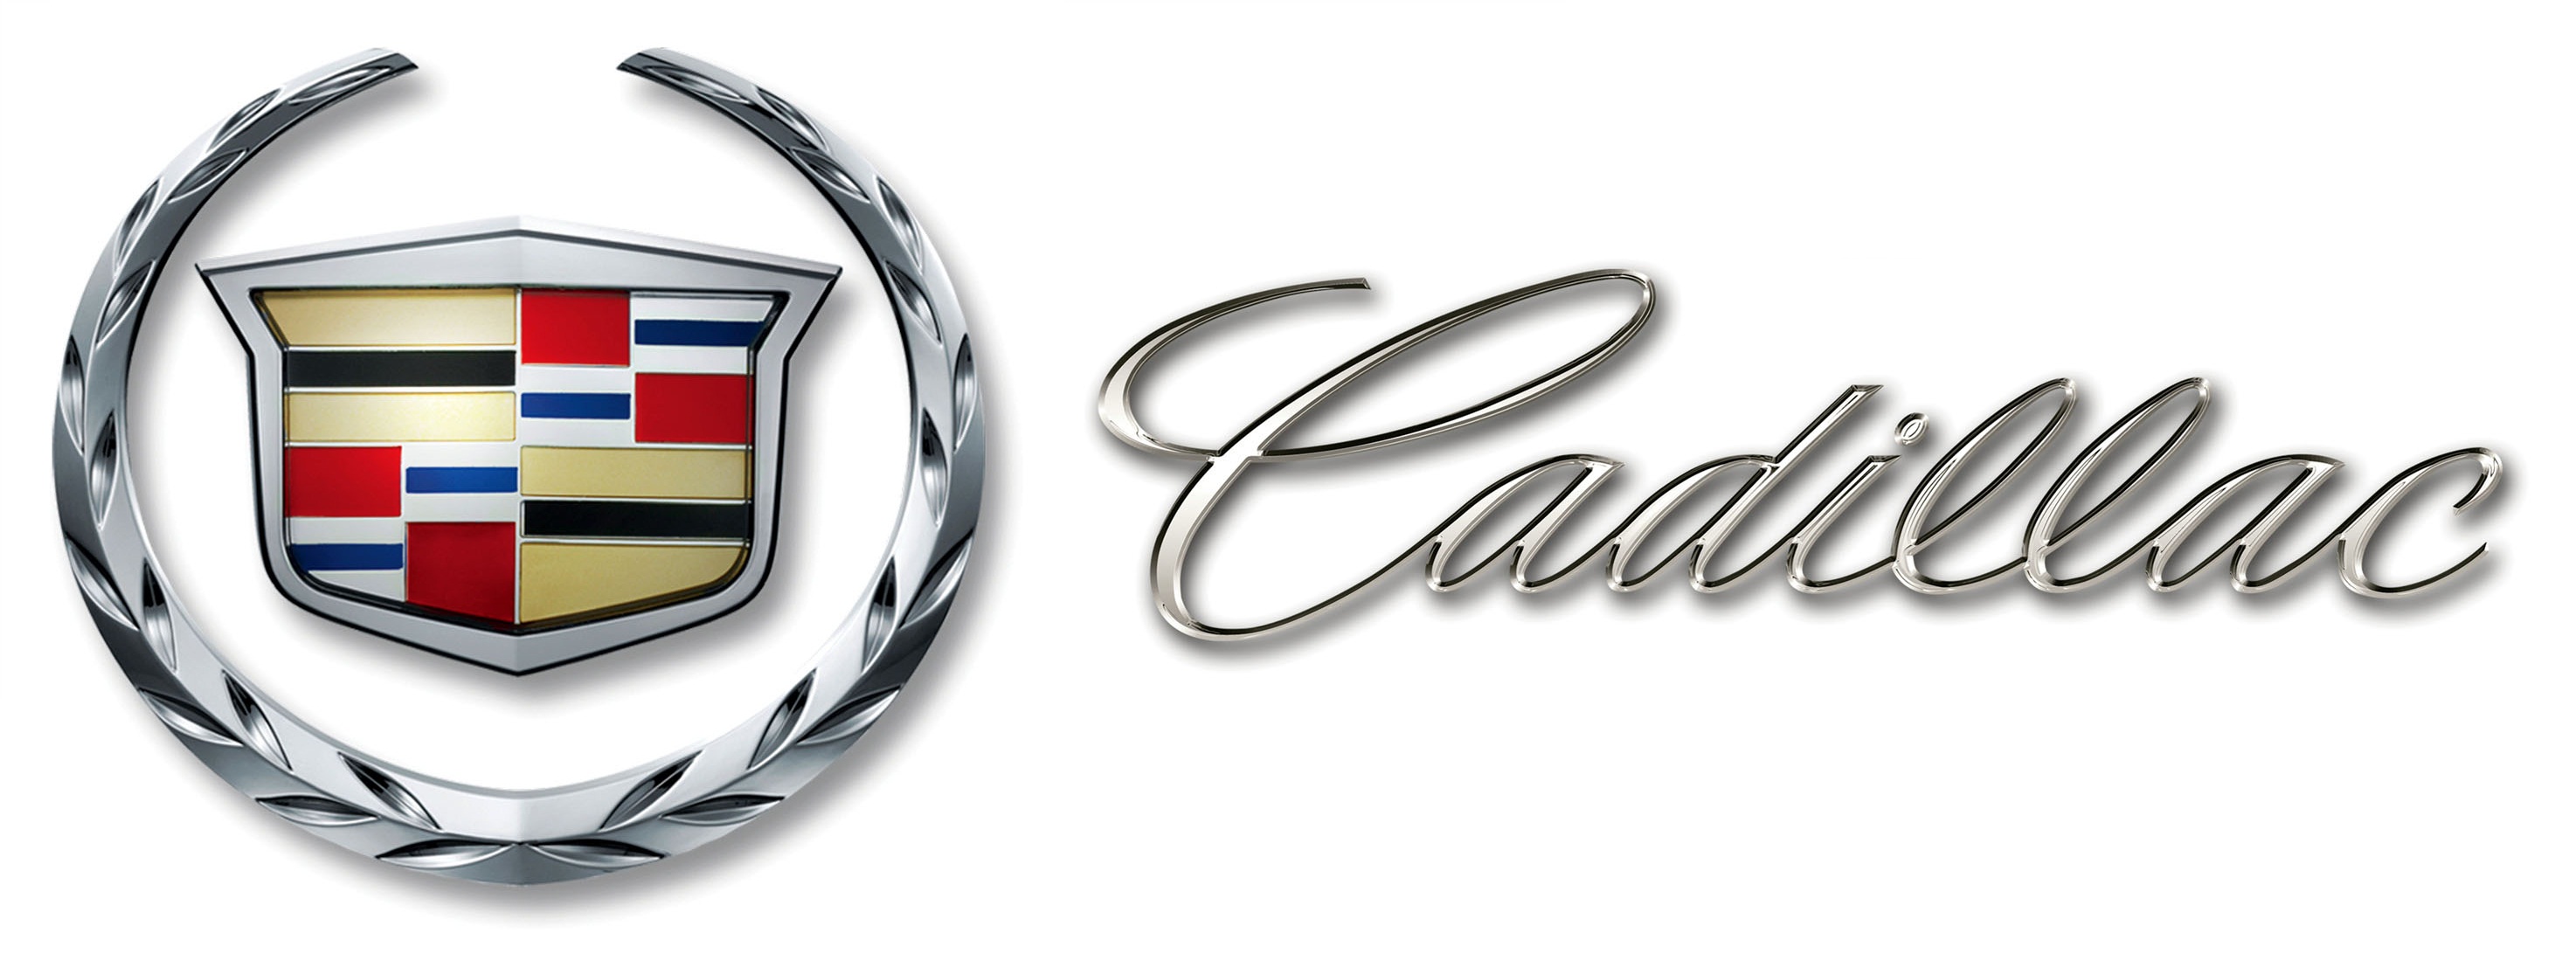 Cadillac Logo Vector at GetDrawings | Free download